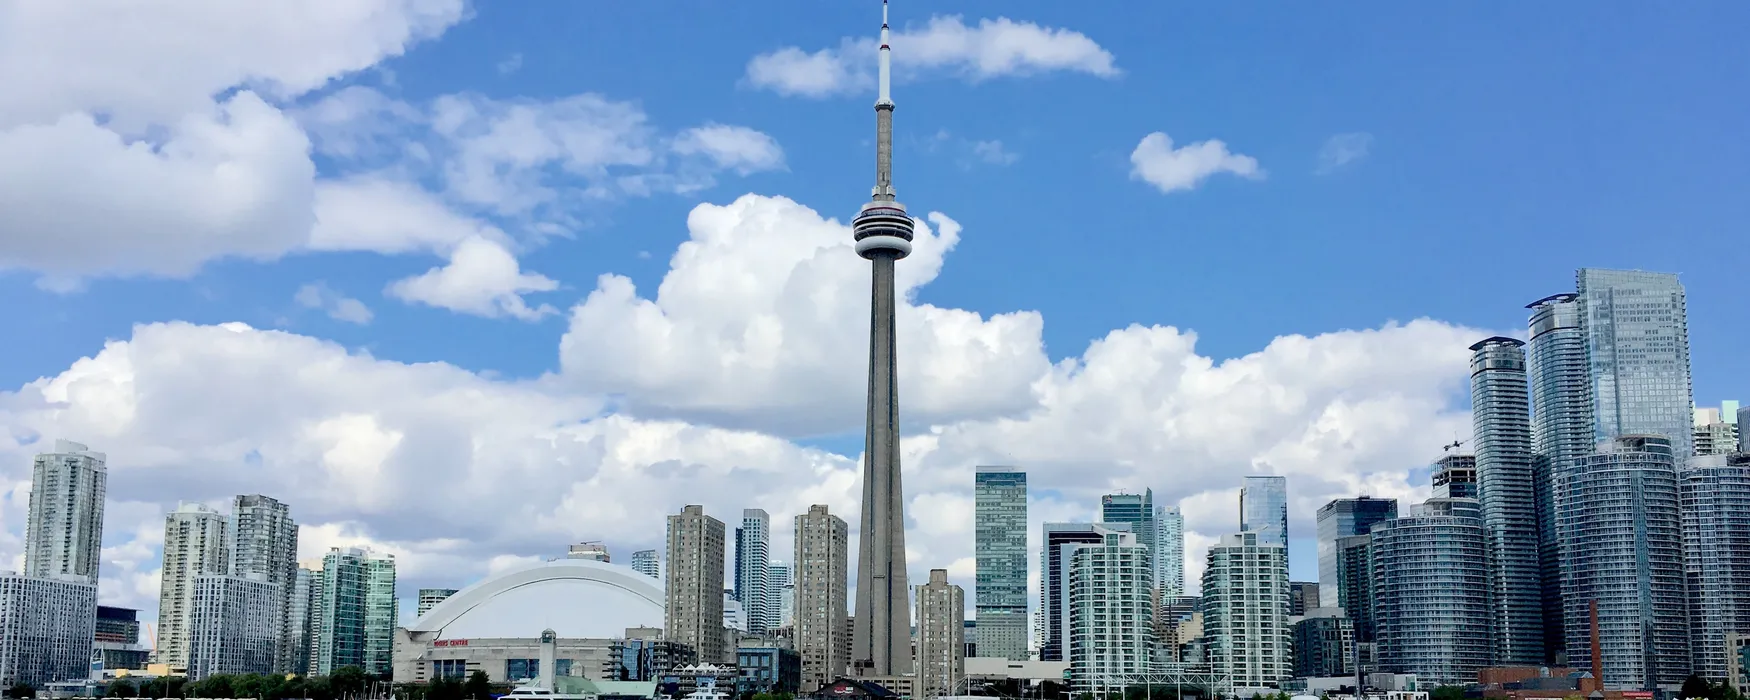 Co warto zobaczyć w Toronto: odkryj piękny skyline miasta 